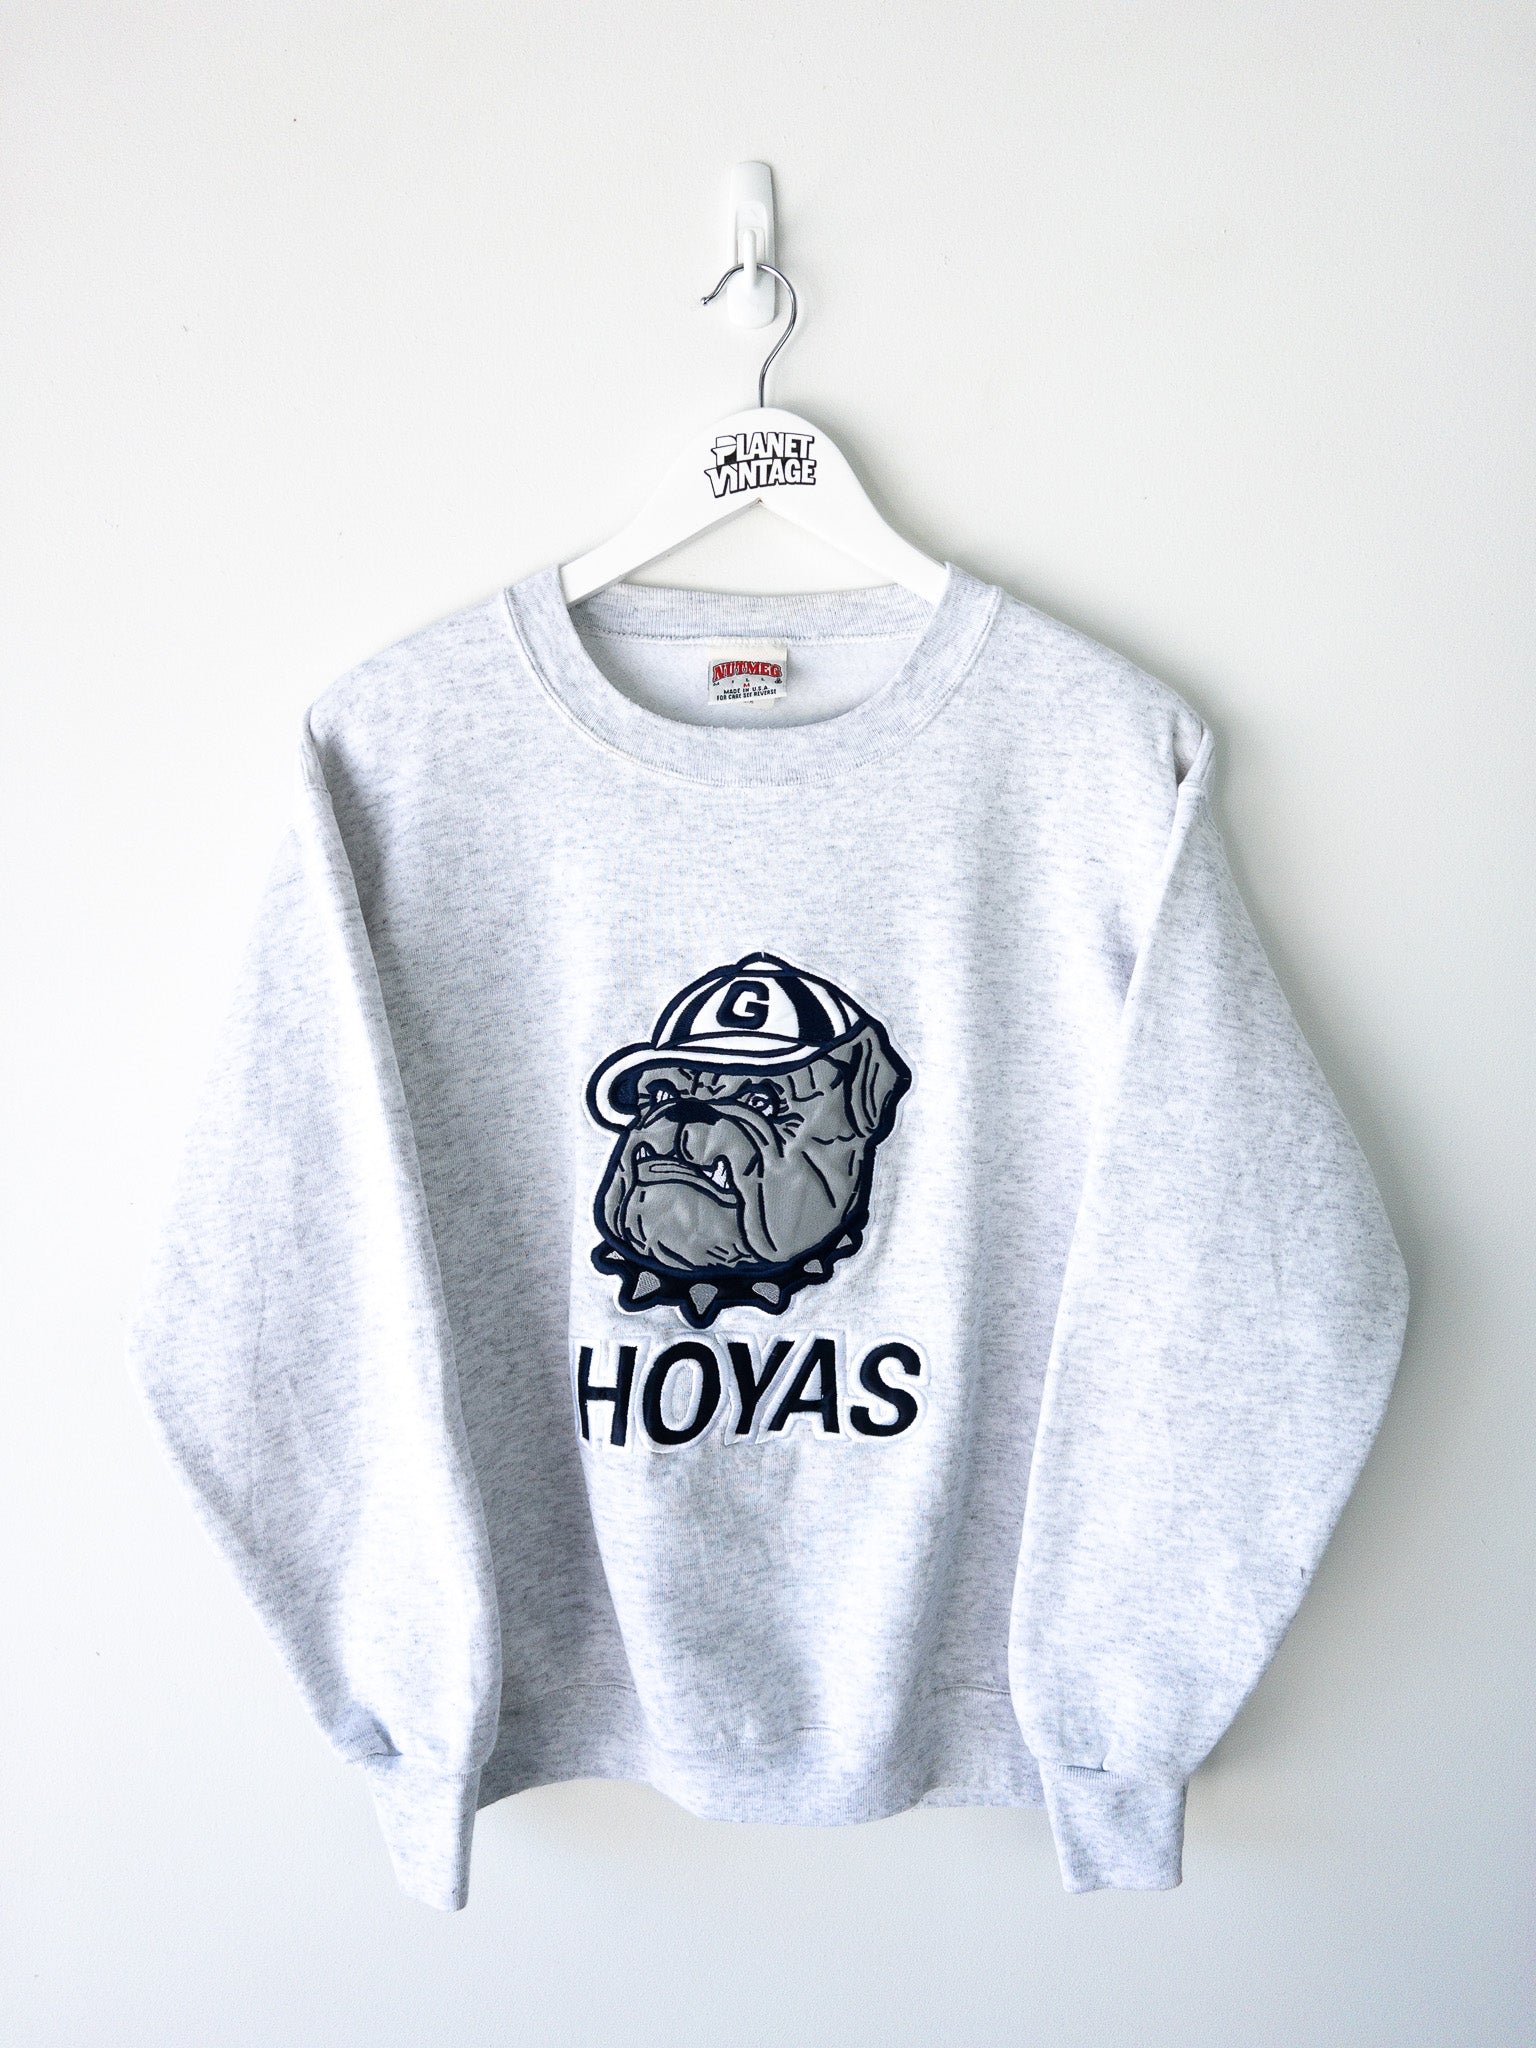 Vintage Georgetown Hoyas Sweatshirt (M)